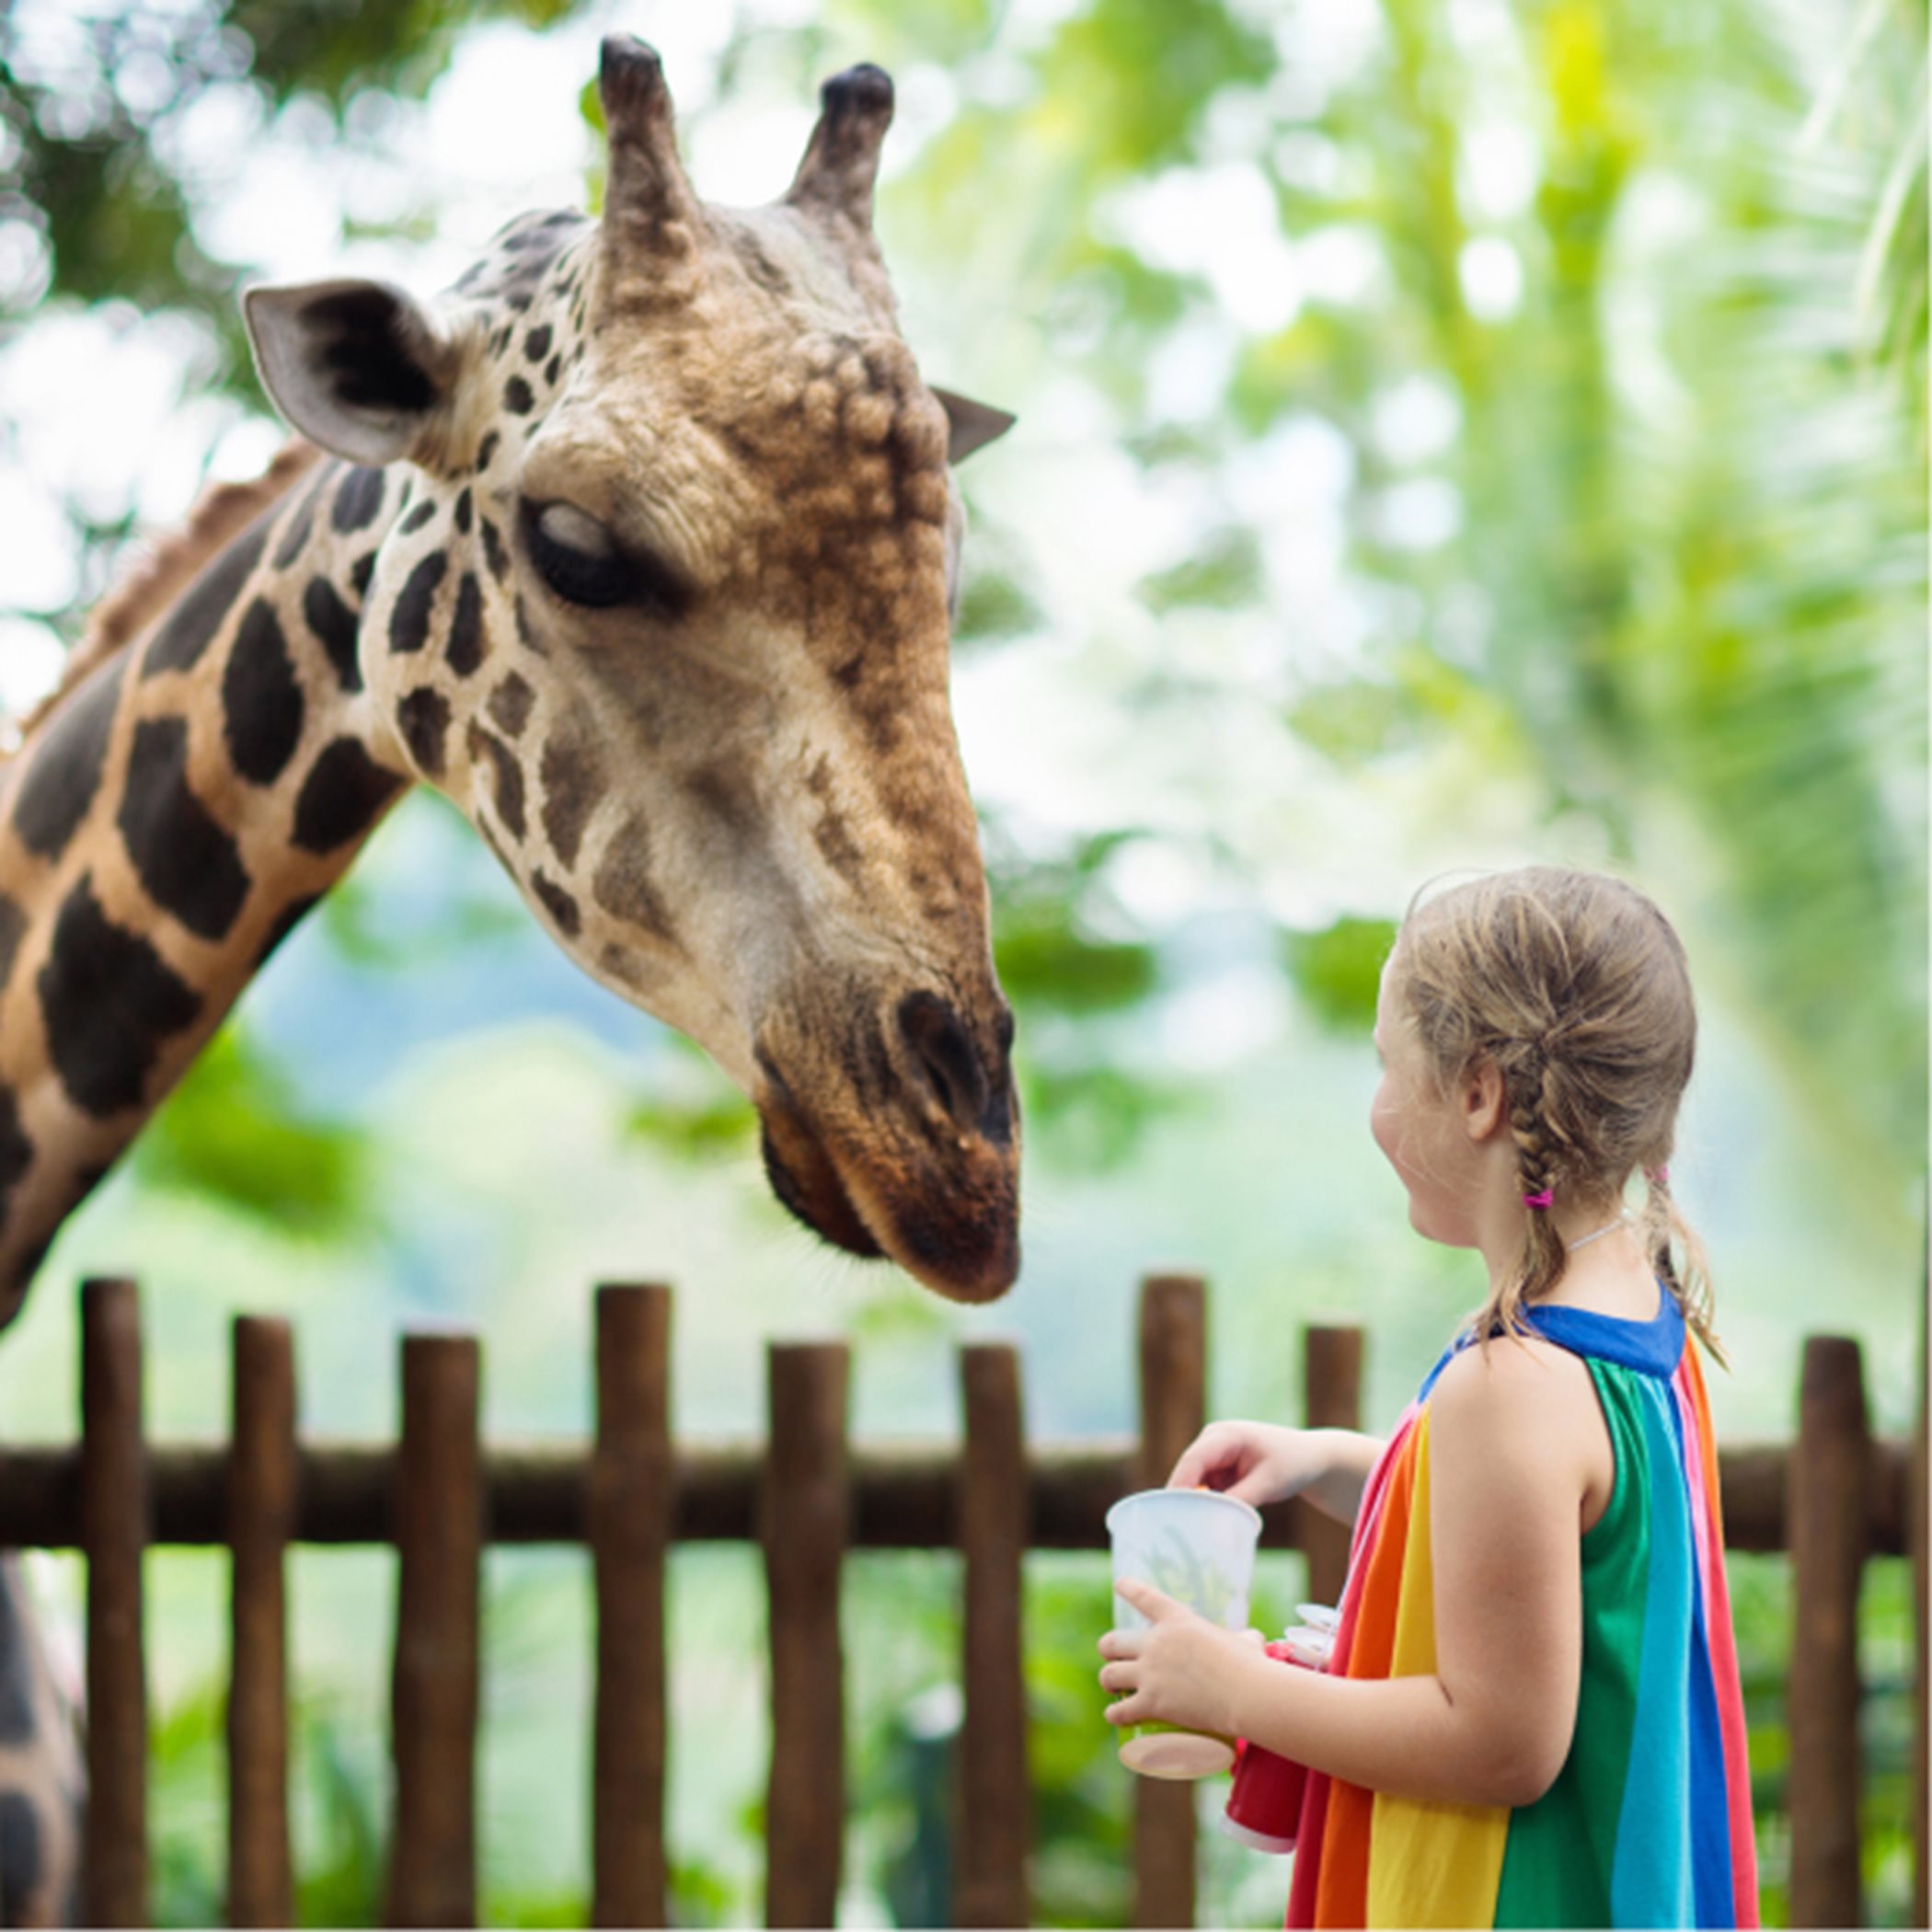 Little girl and a giraffe